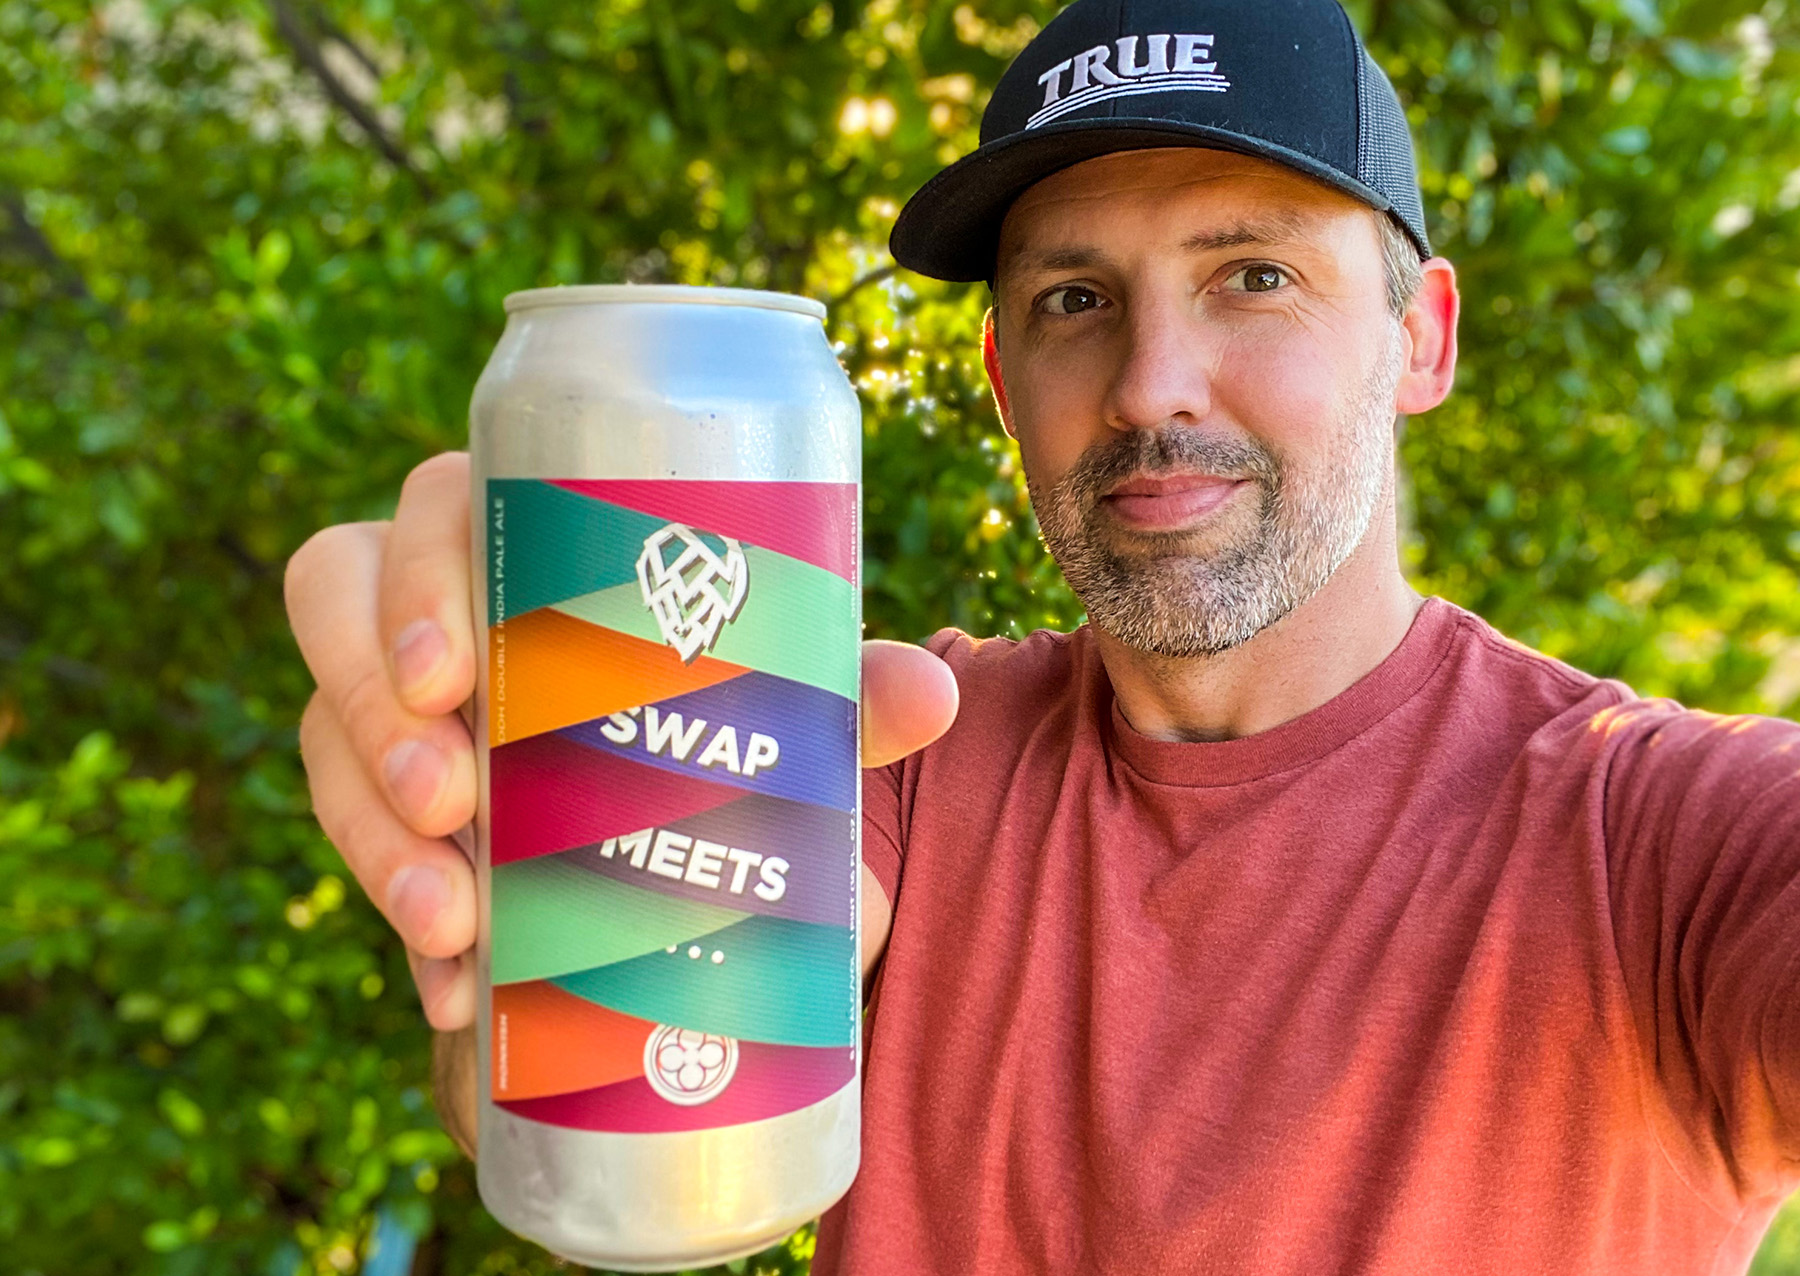 Swap Meets Beer Selfie